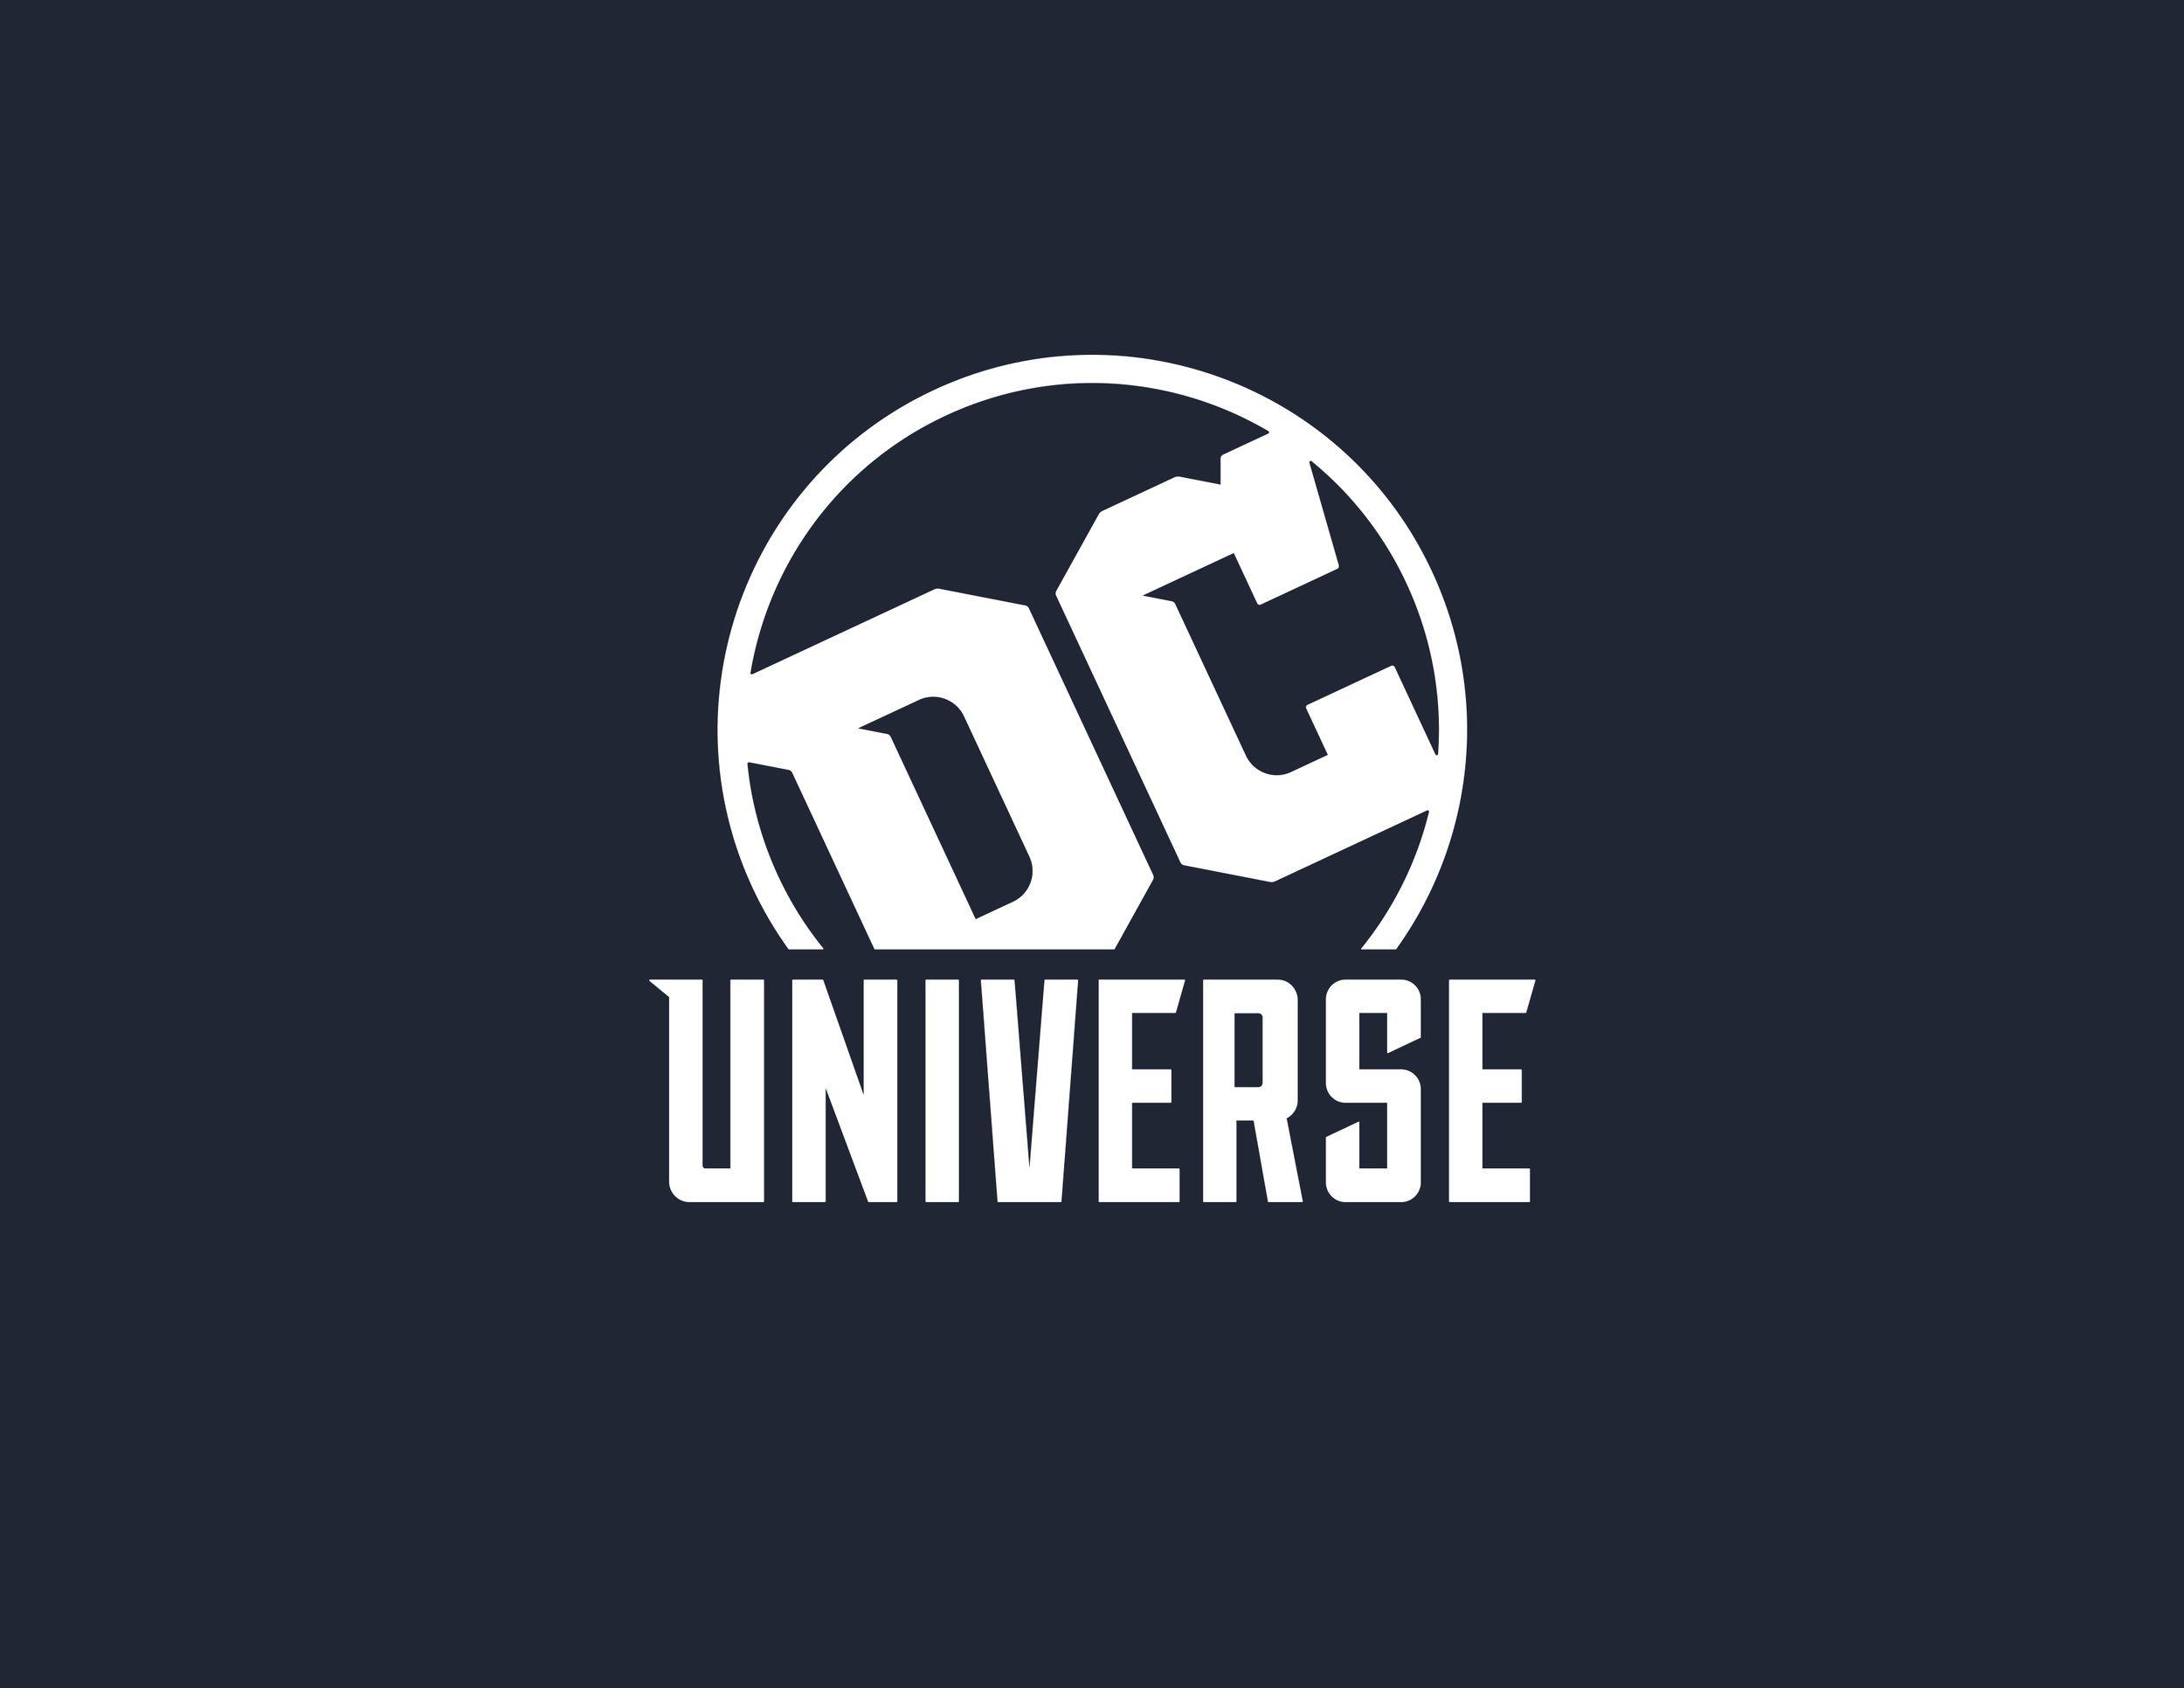 Universe Logo - DC UNIVERSE LOGO Nerd Problems